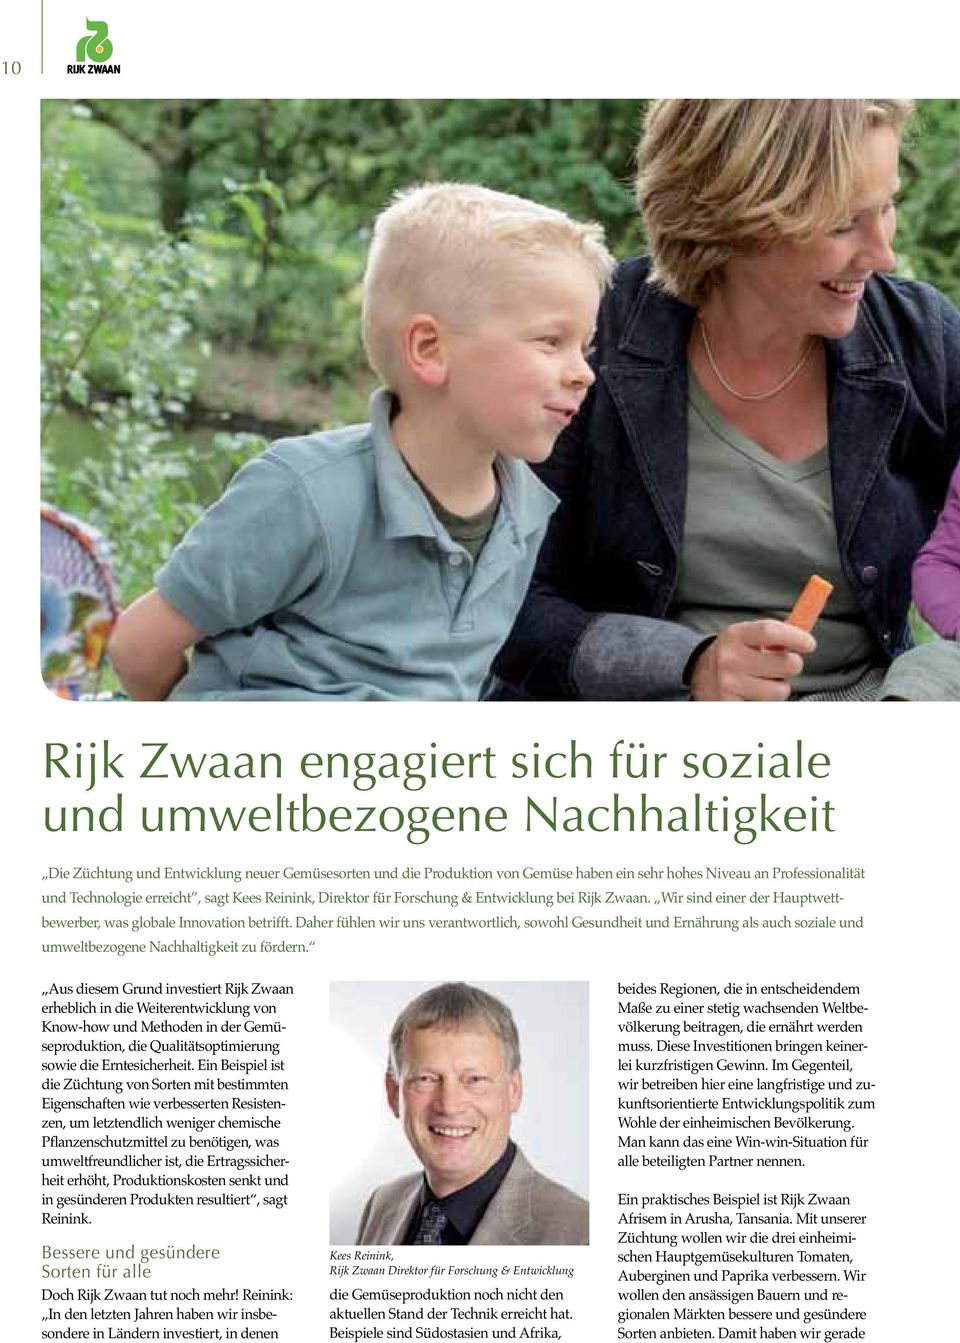 Aus diesem Grund investiert Rijk Zwaan erheblich in die Weiterentwicklung von Know-how und Methoden in der Gemü- sowie die Erntesicherheit.